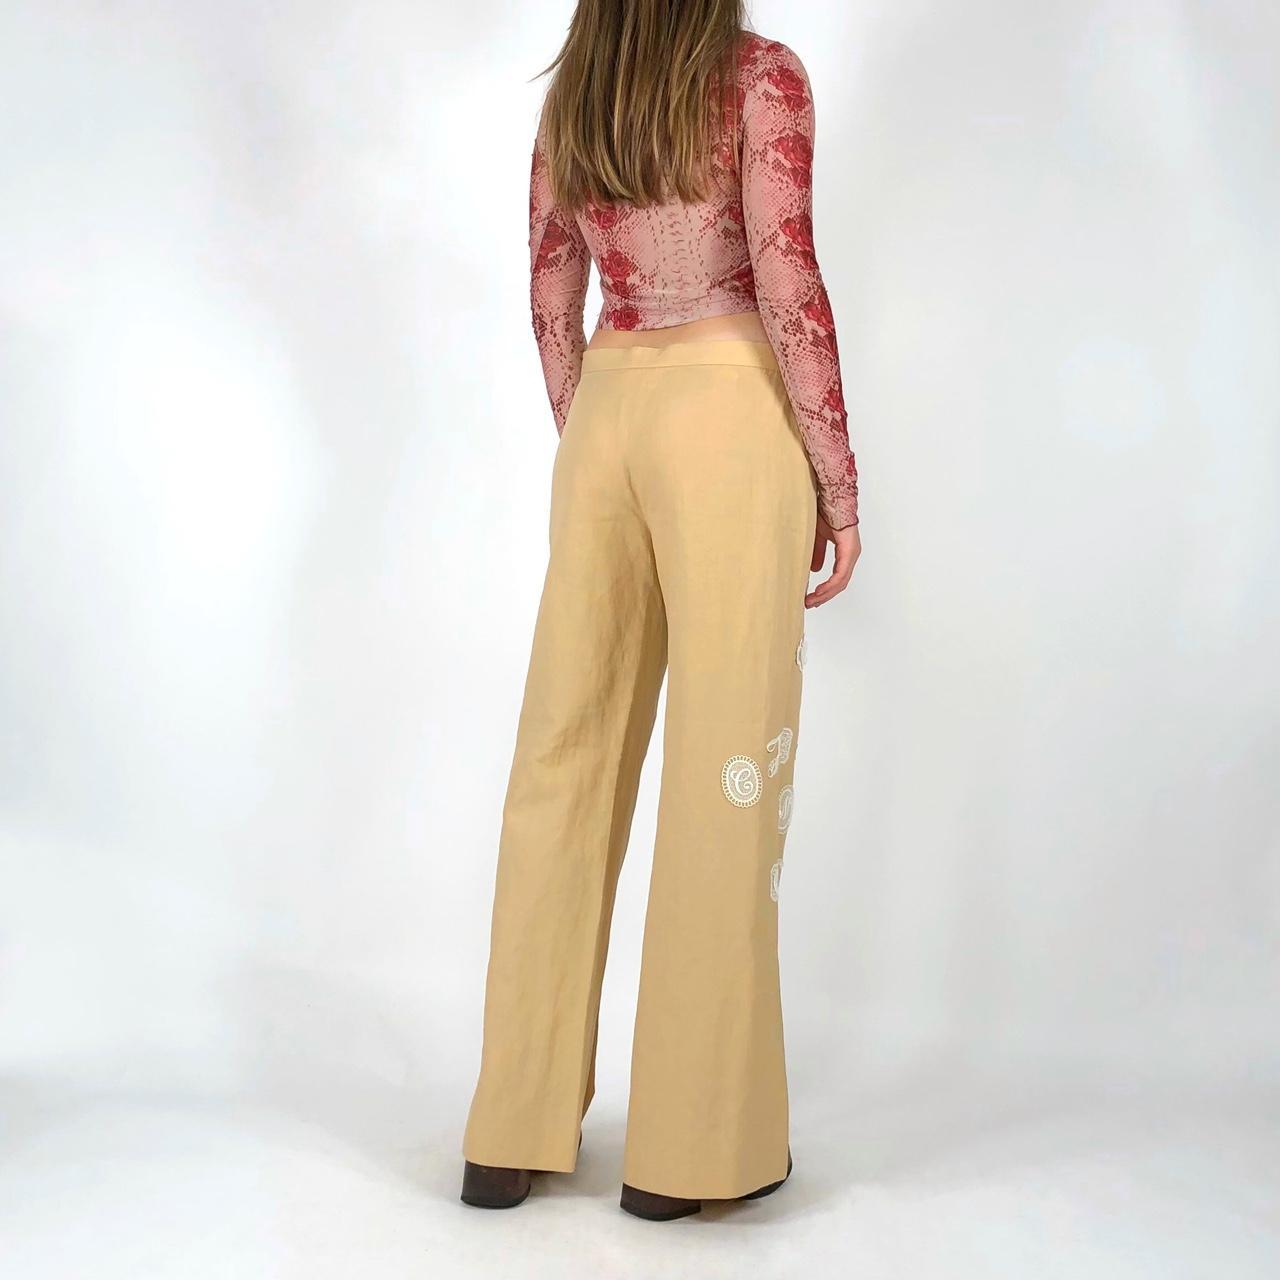 Moschino Cheap & Chic Women's Tan Trousers (4)